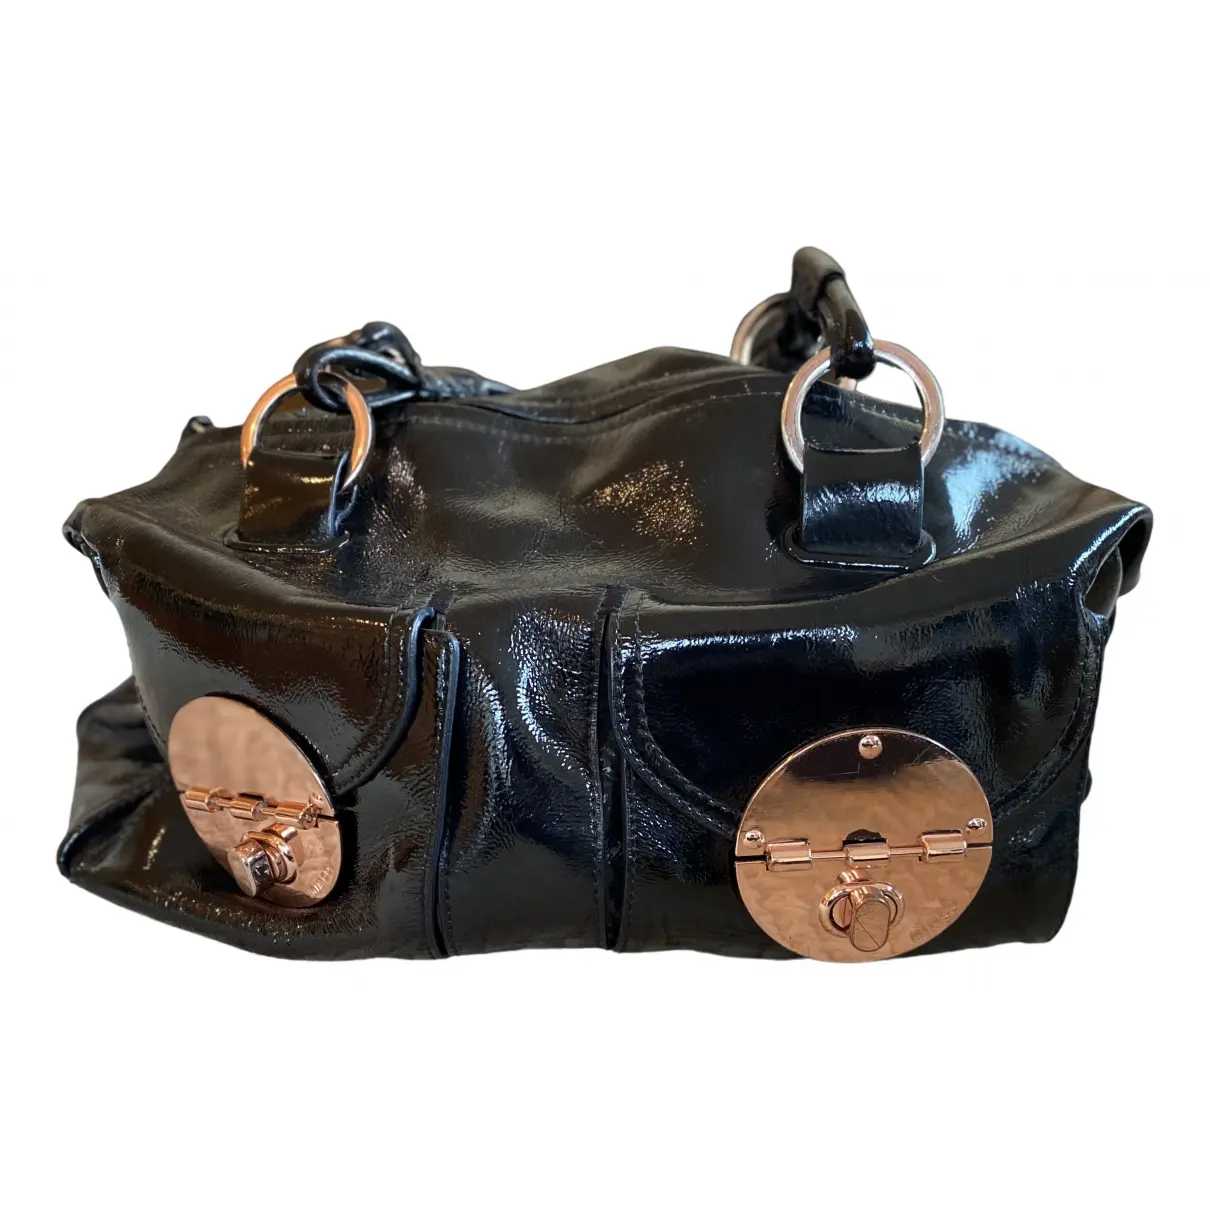 Leather handbag Mimco